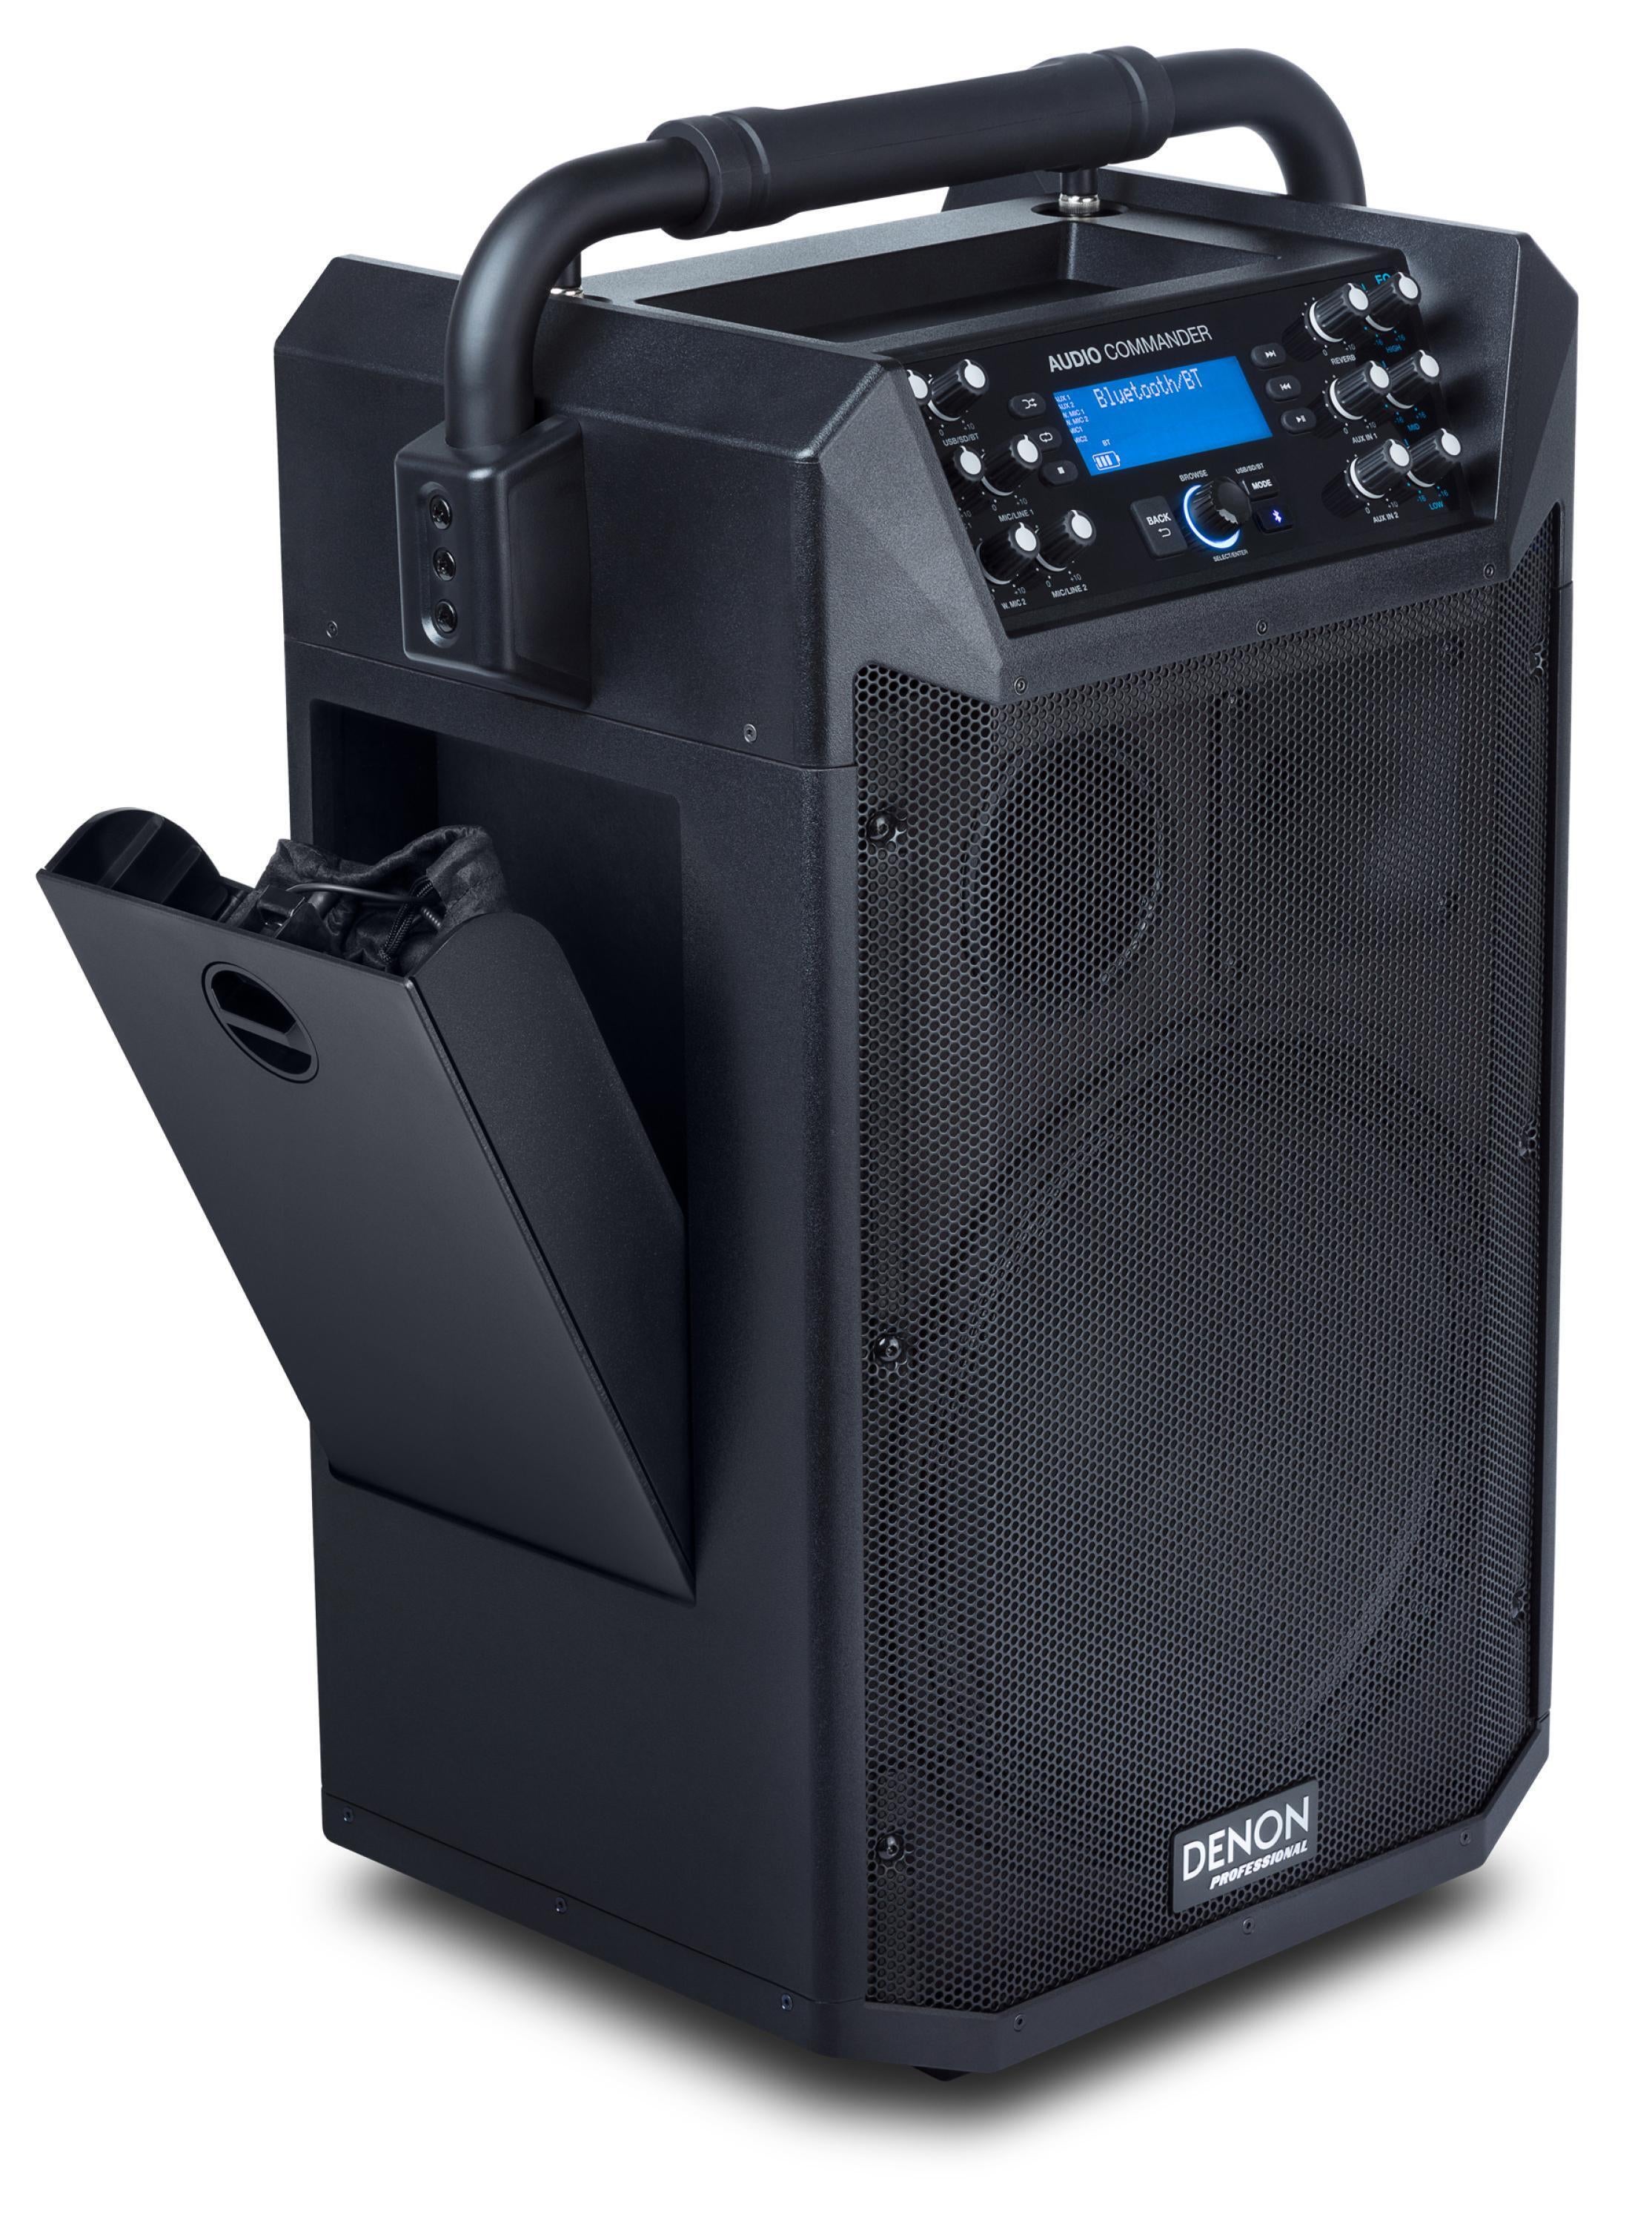 少量生産★DENON Professional Audio Commander プロフェッショナル・モバイル PAシステム ポータブル PAセット ★新品送料込 モニタースピーカー